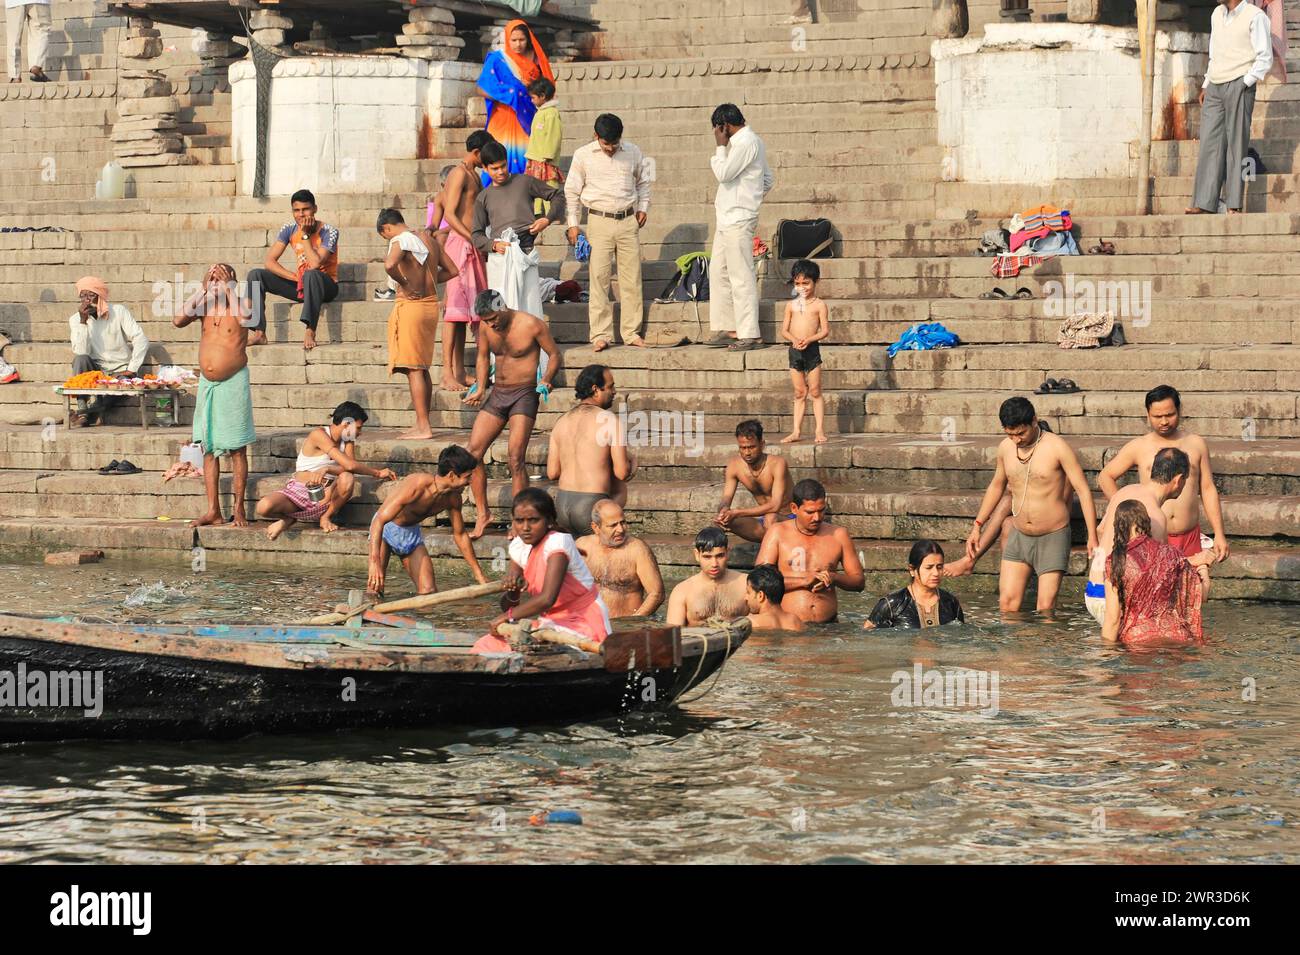 Un bateau passe devant un groupe de personnes se baignant dans l'eau à la rivière Steps, Varanasi, Uttar Pradesh, Inde Banque D'Images